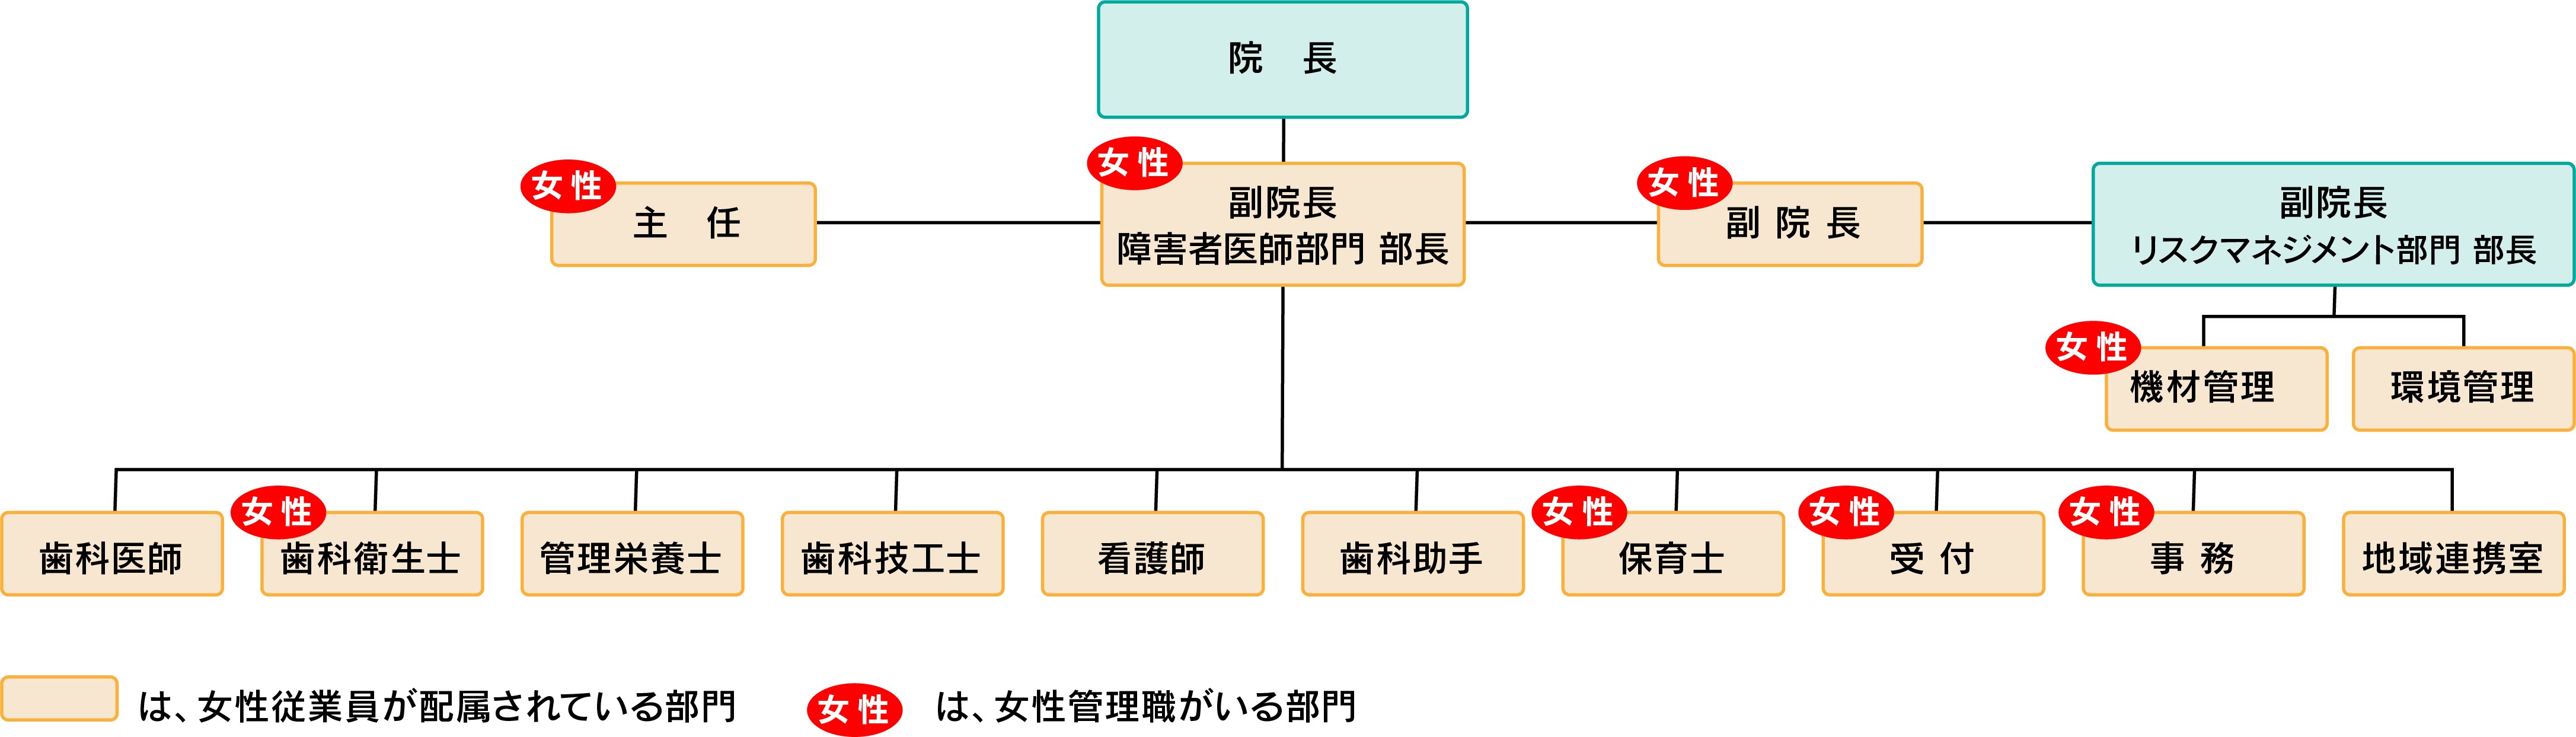 図2組織図_v2.jpg